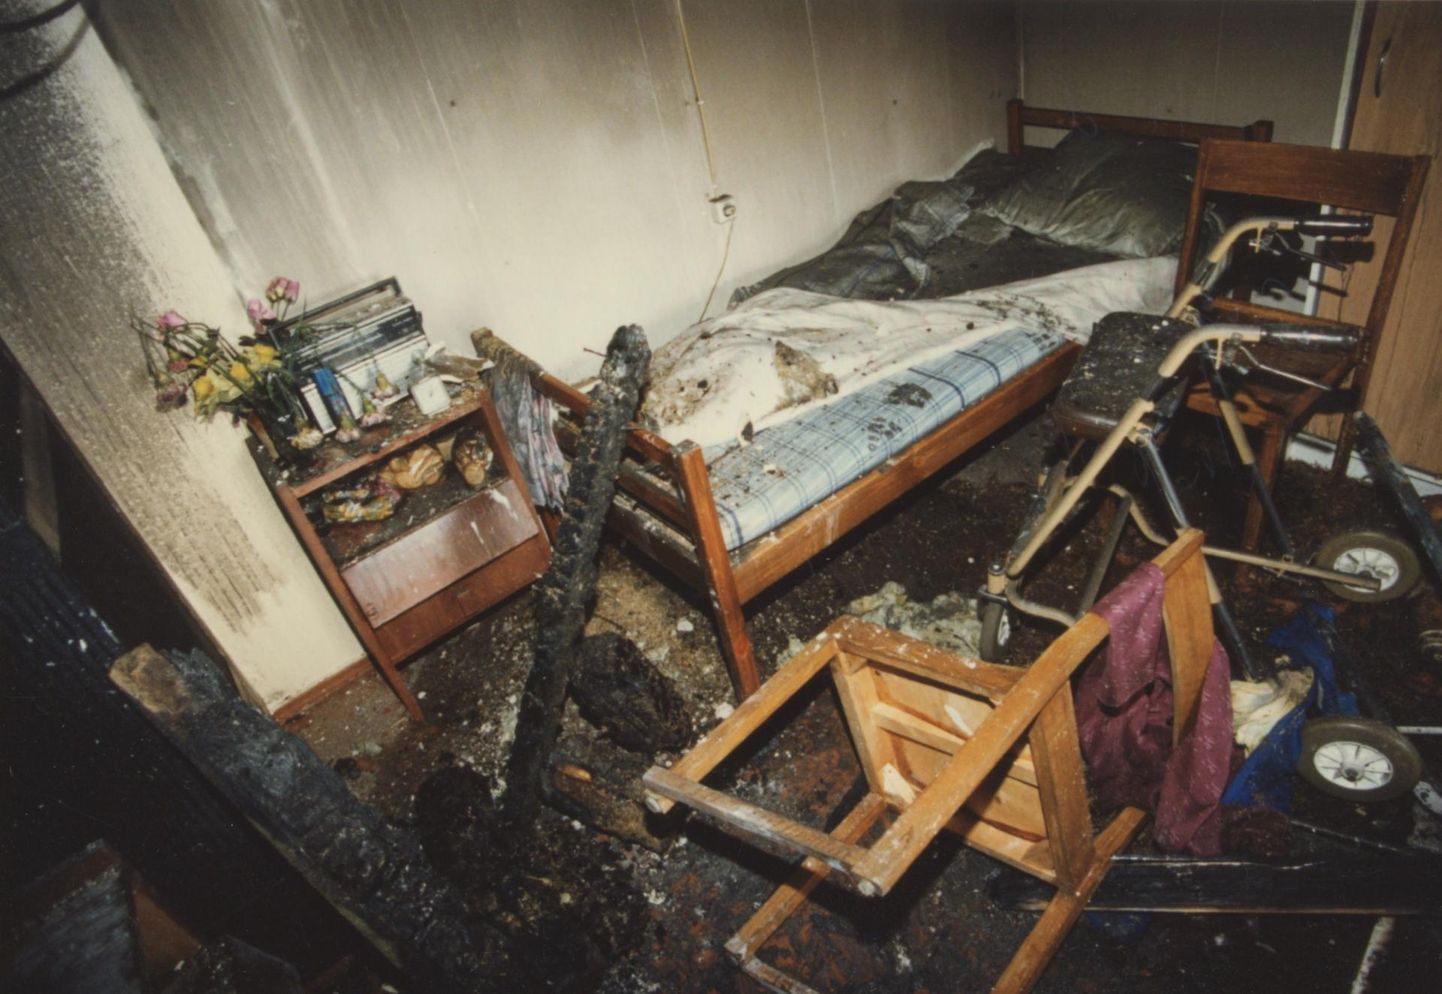 Halinga hooldekodu põlengus 1997. aasta aprillis jättis elu kaheksa inimest.